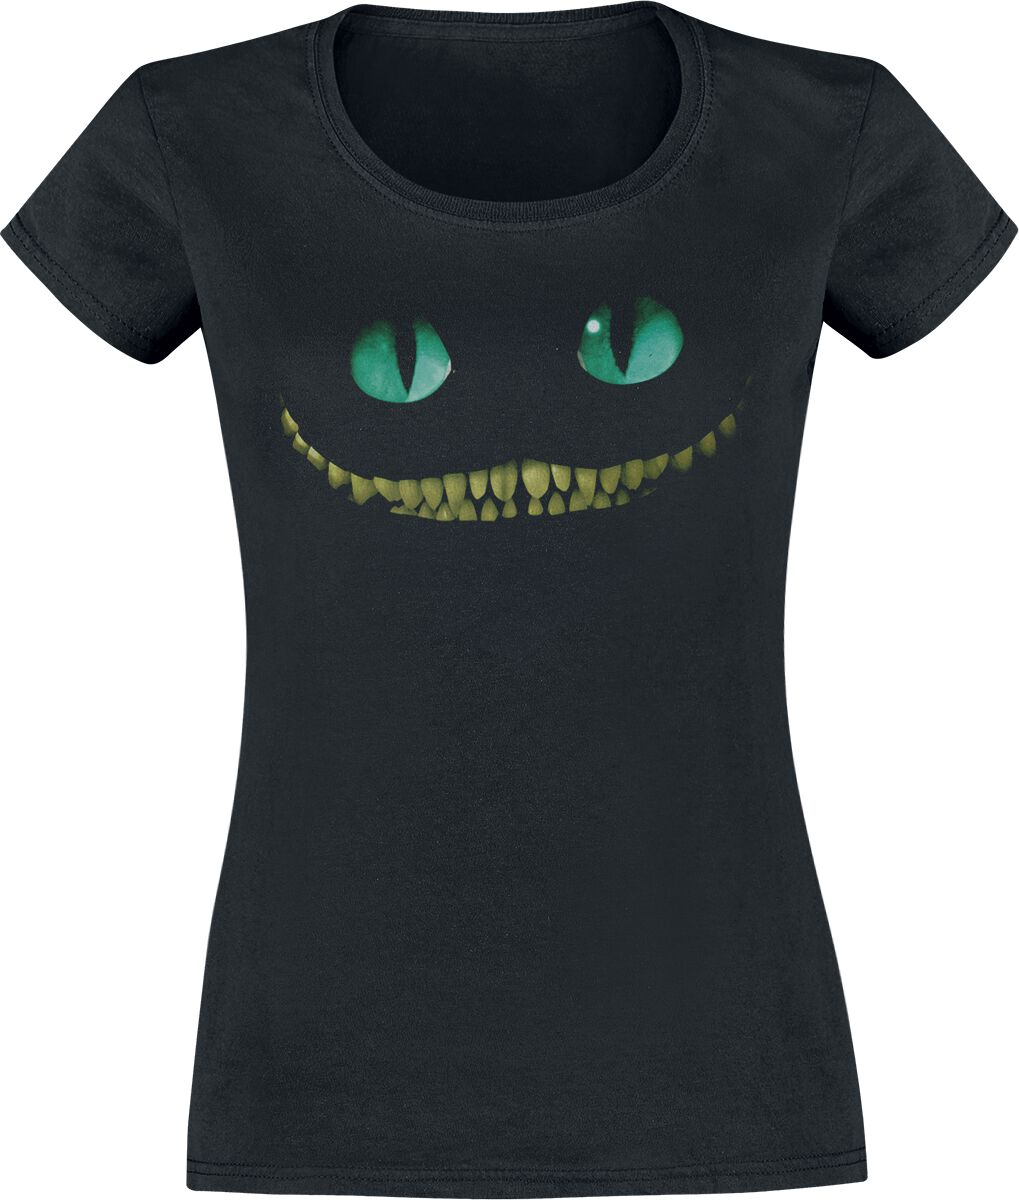 Alice im Wunderland - Disney T-Shirt - Grinsekatze - Lächeln - XS bis XXL - für Damen - Größe S - schwarz  - Lizenzierte